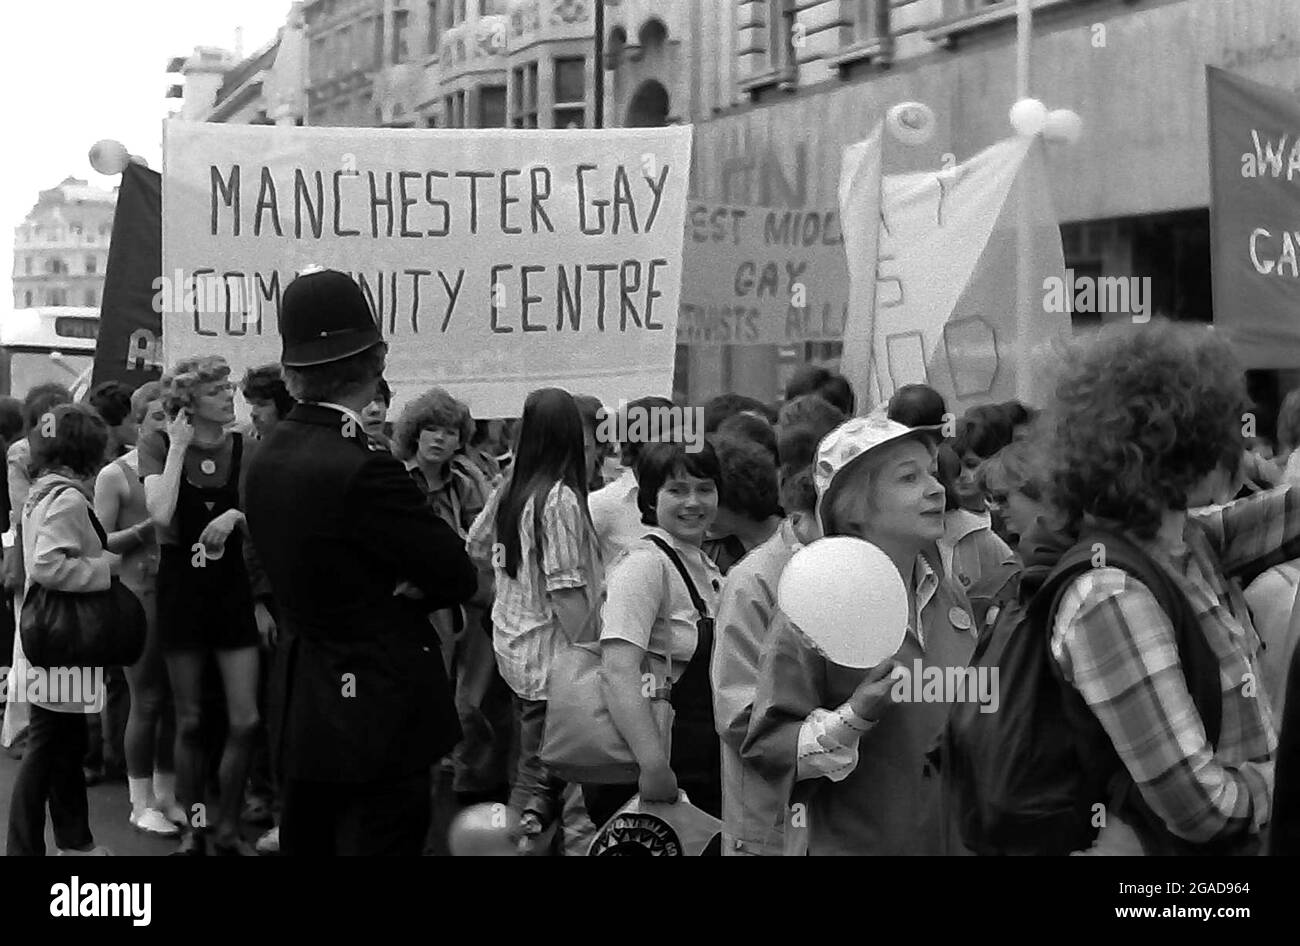 Les participants à la marche et au rassemblement à Hyde Park, Londres, Angleterre, Royaume-Uni, 1979 gay Pride, Qui avait pour thème : 'Stonewall 69 gay Pride 79' Banque D'Images